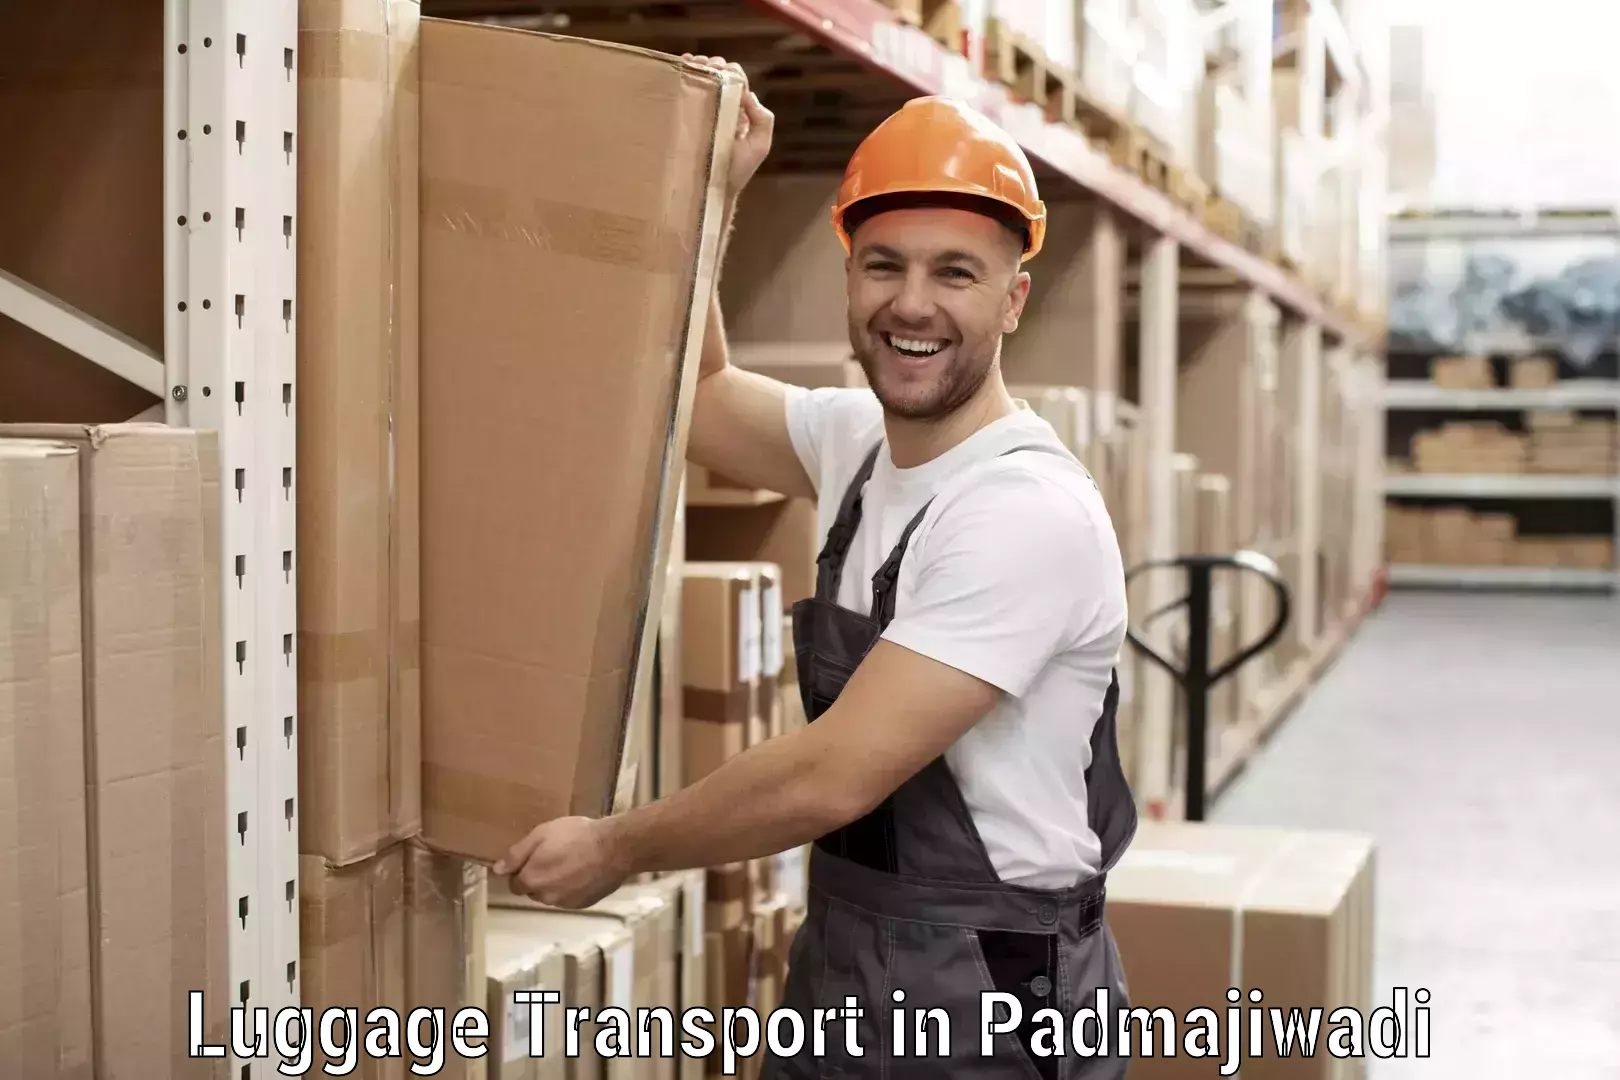 Luggage shipping service in Padmajiwadi